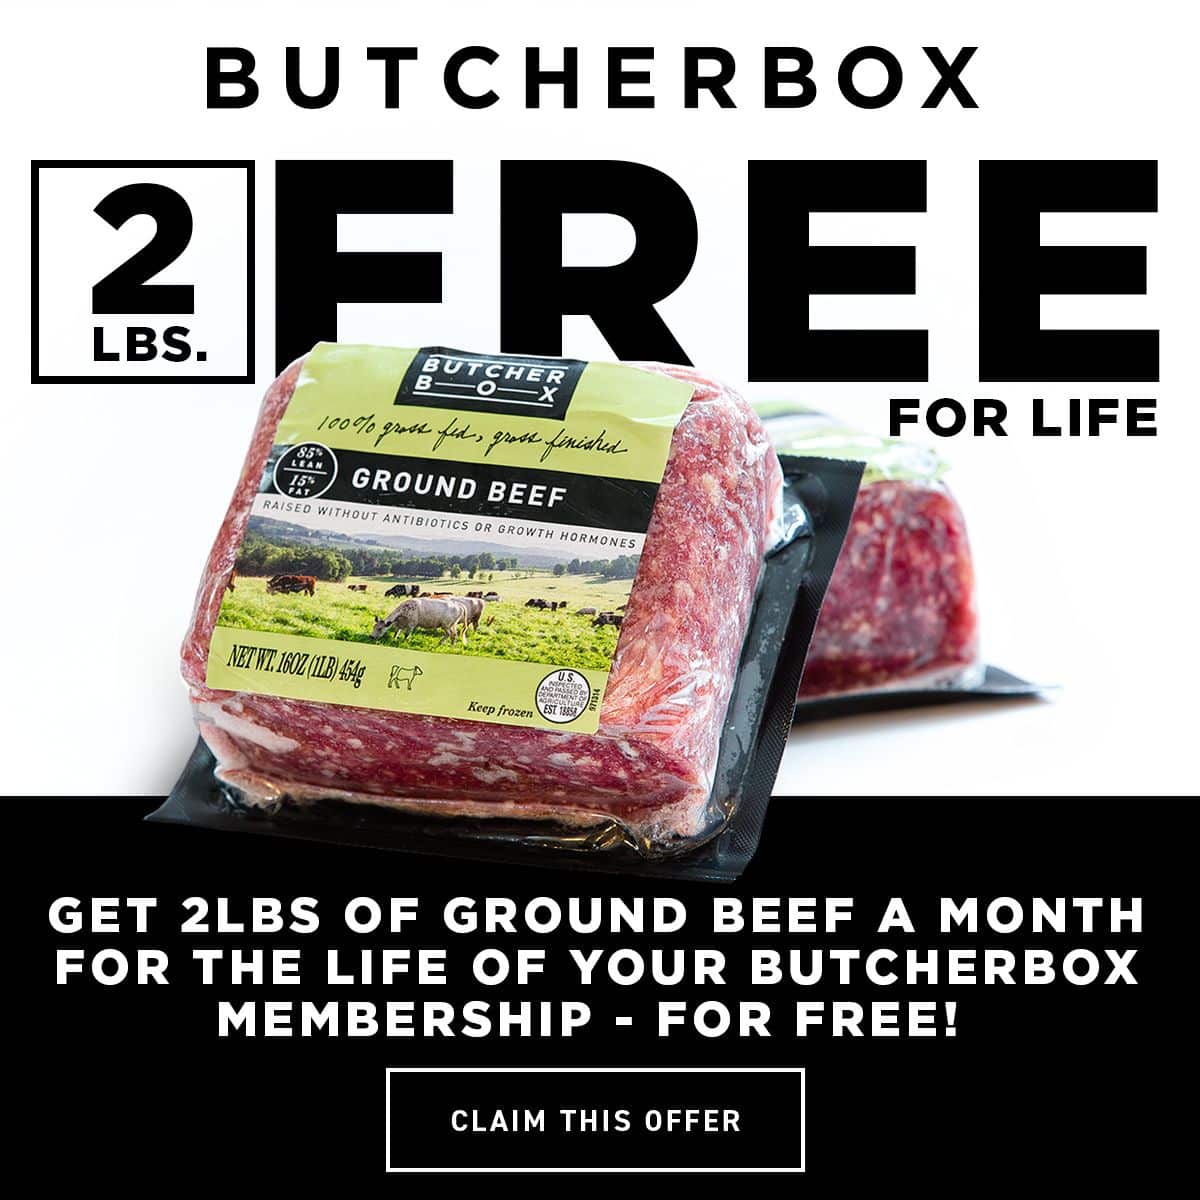 Carne picada de ButcherBox de por vida